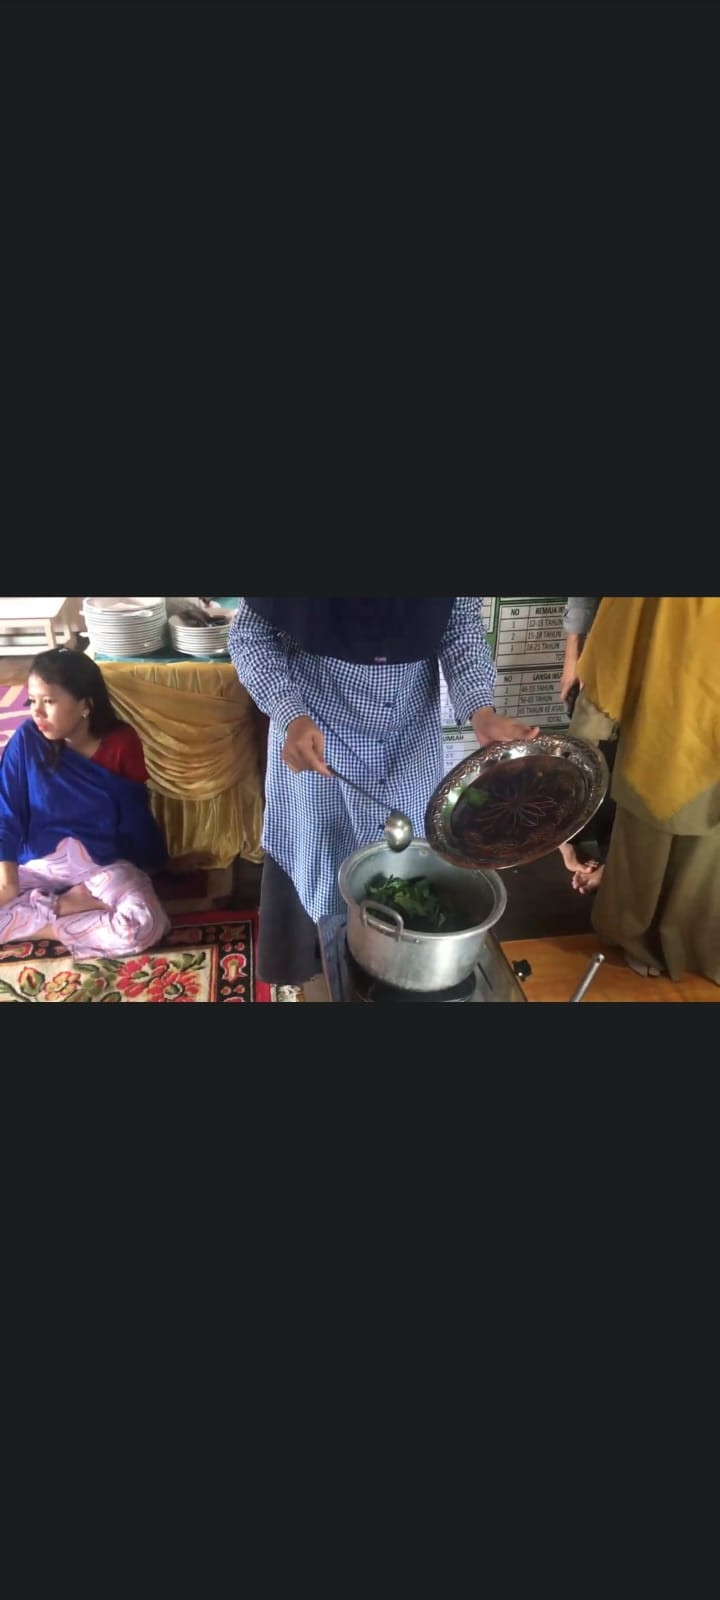 Cara memasak sayur bening yang baik dan benar di demontrasikan oleh kader Kampung KB Beting Bersahaja bagi ibu Hamil